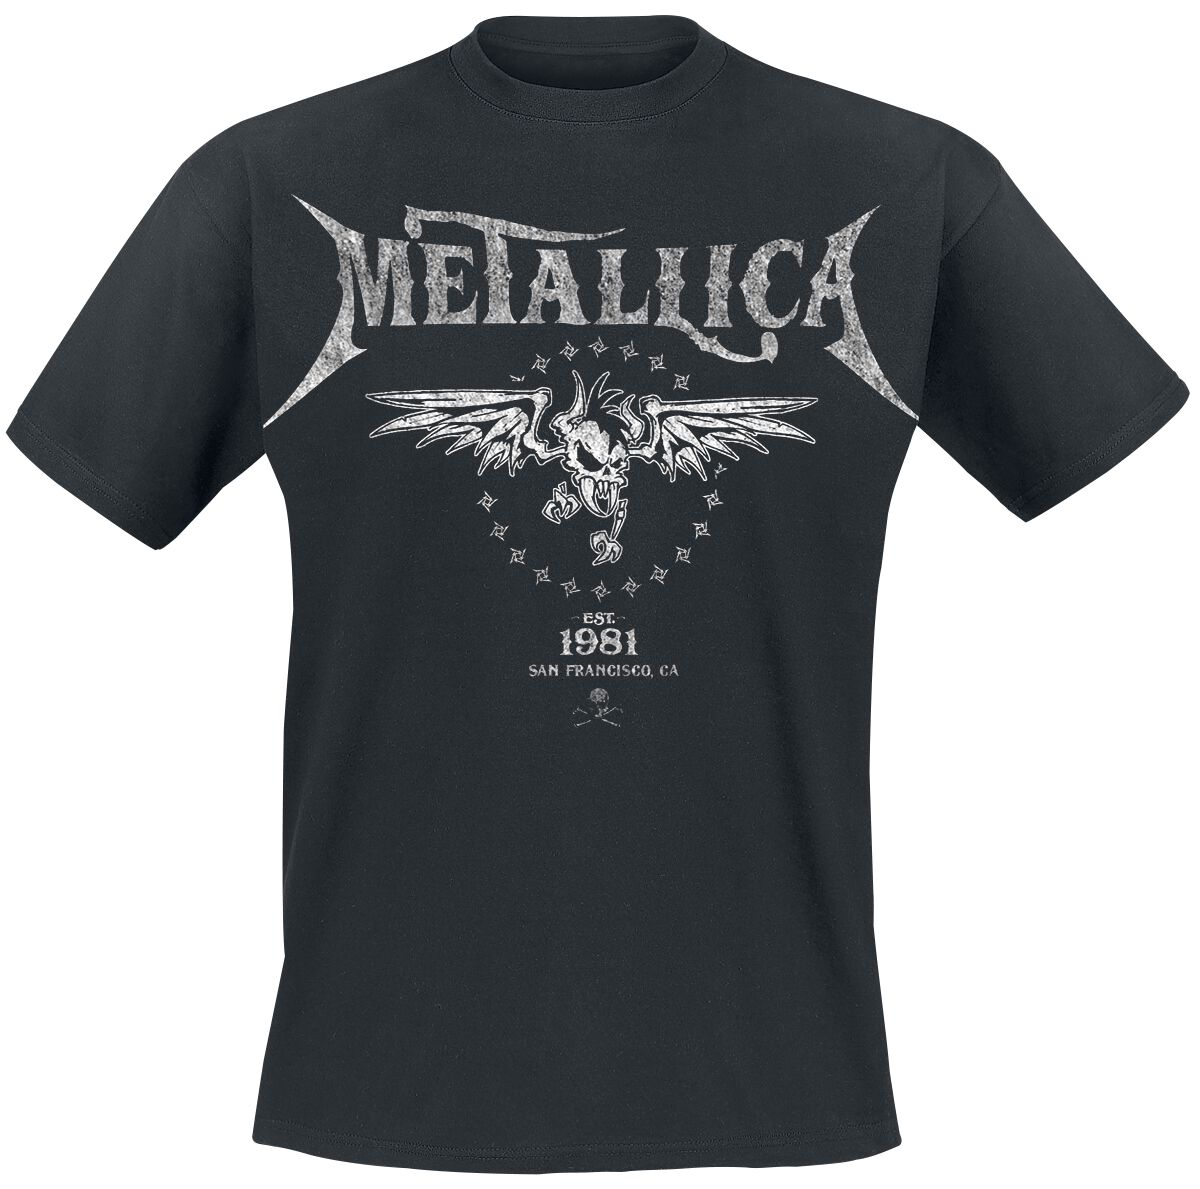 Metallica T-Shirt - Biker - S bis 5XL - für Männer - Größe 4XL - schwarz  - Lizenziertes Merchandise!